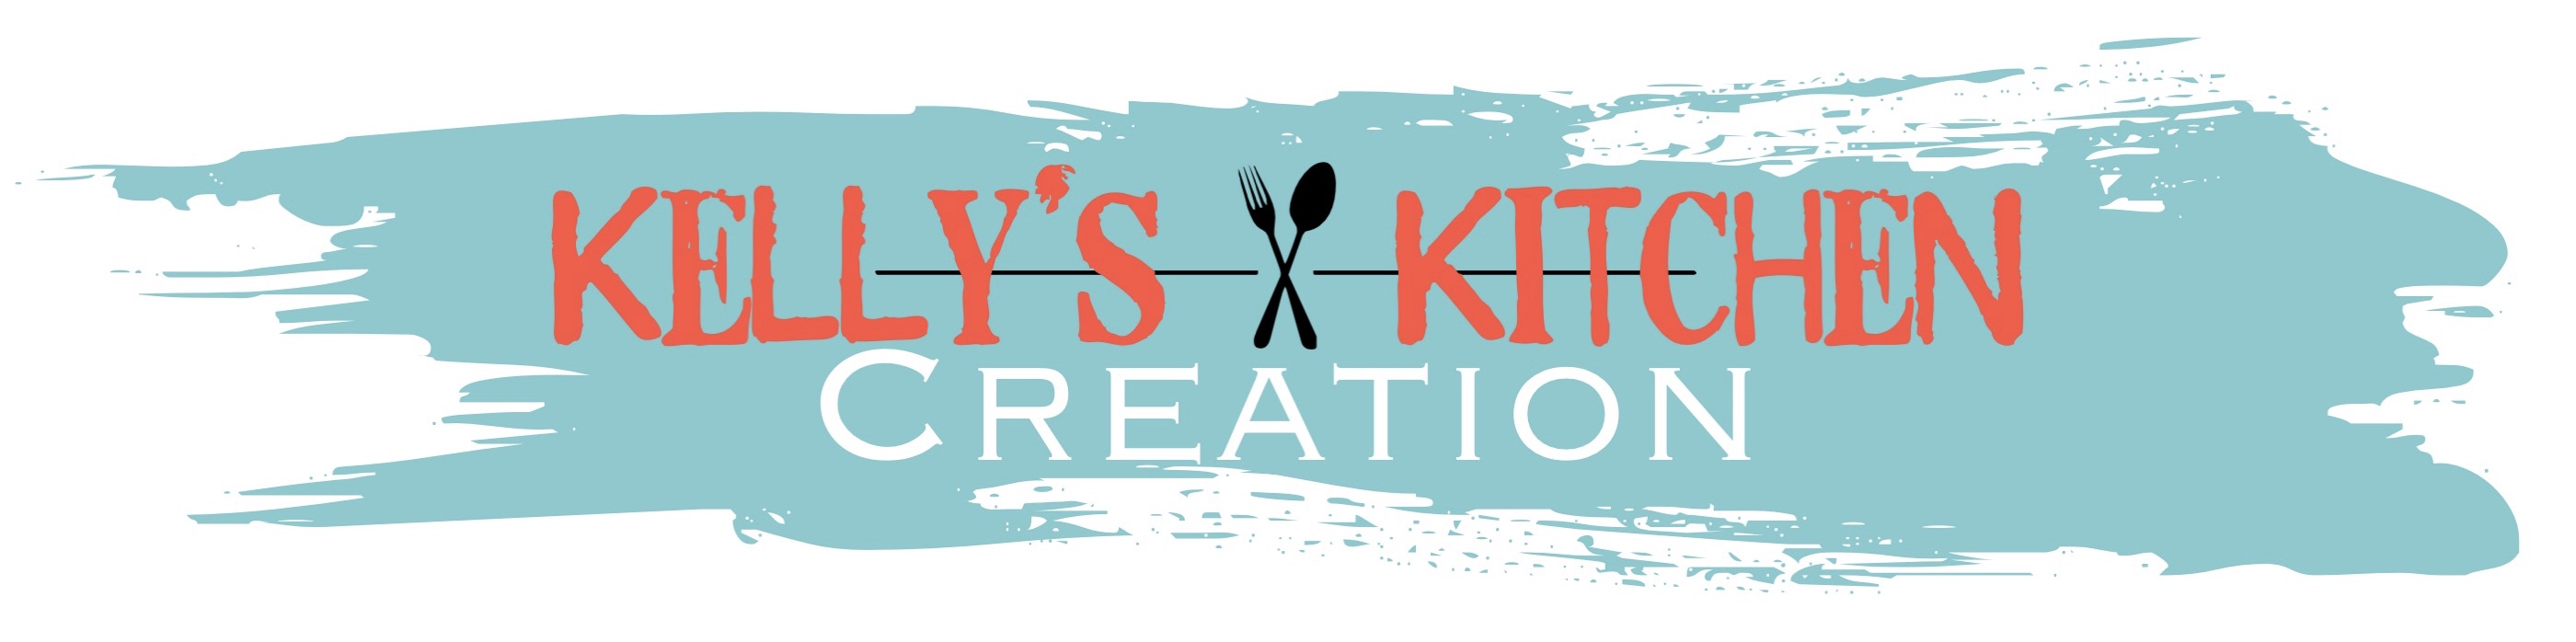 Kelly's Kitchen Creation